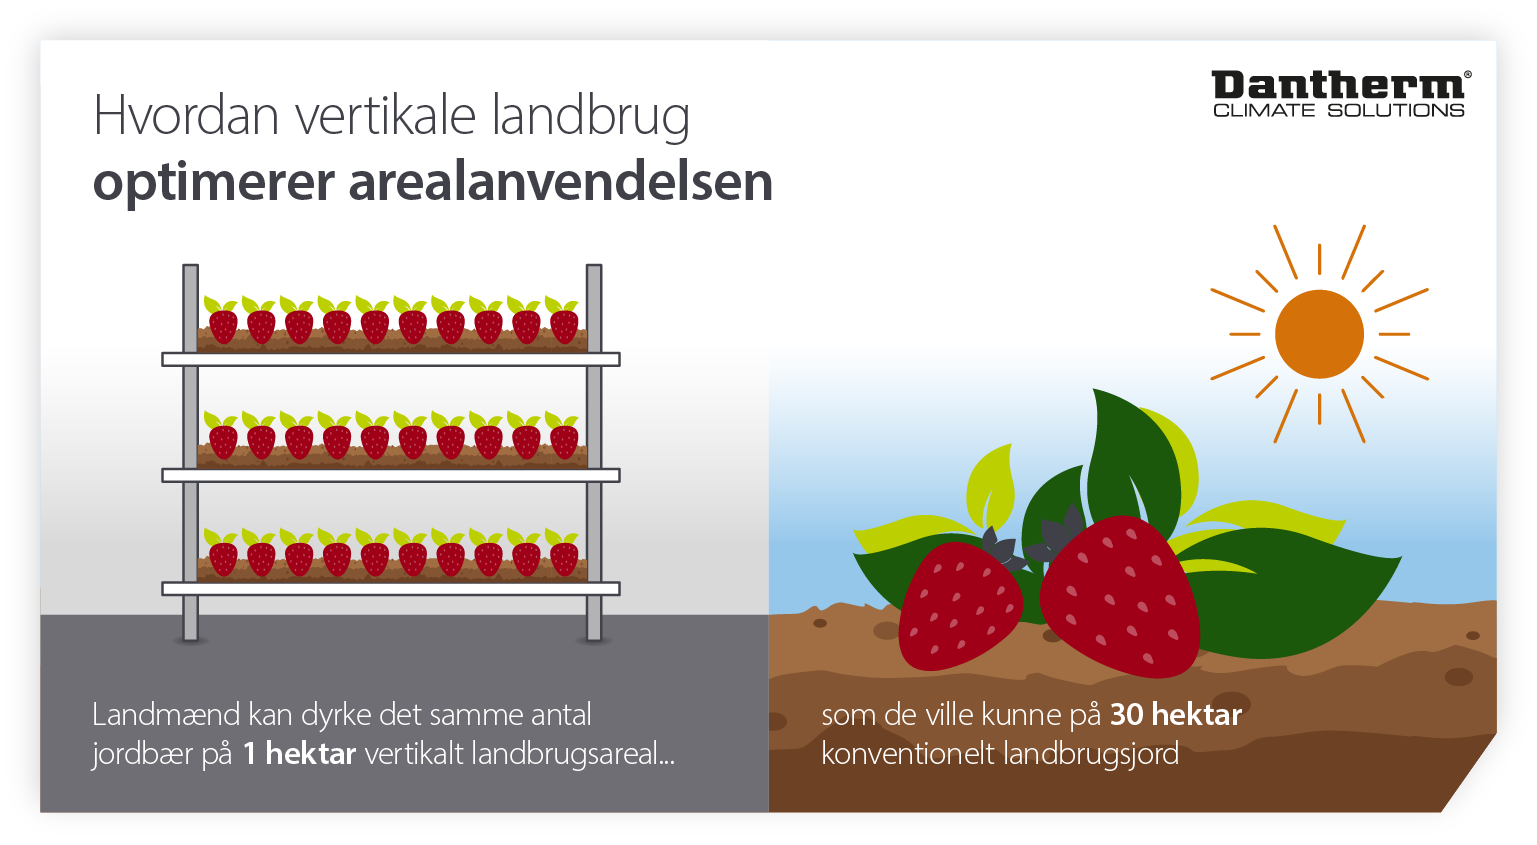 Hvordan landbrug i kontrolleret miljø og vertikale landbrug bidrager til at optimere arealanvendelsen - infografisk billede